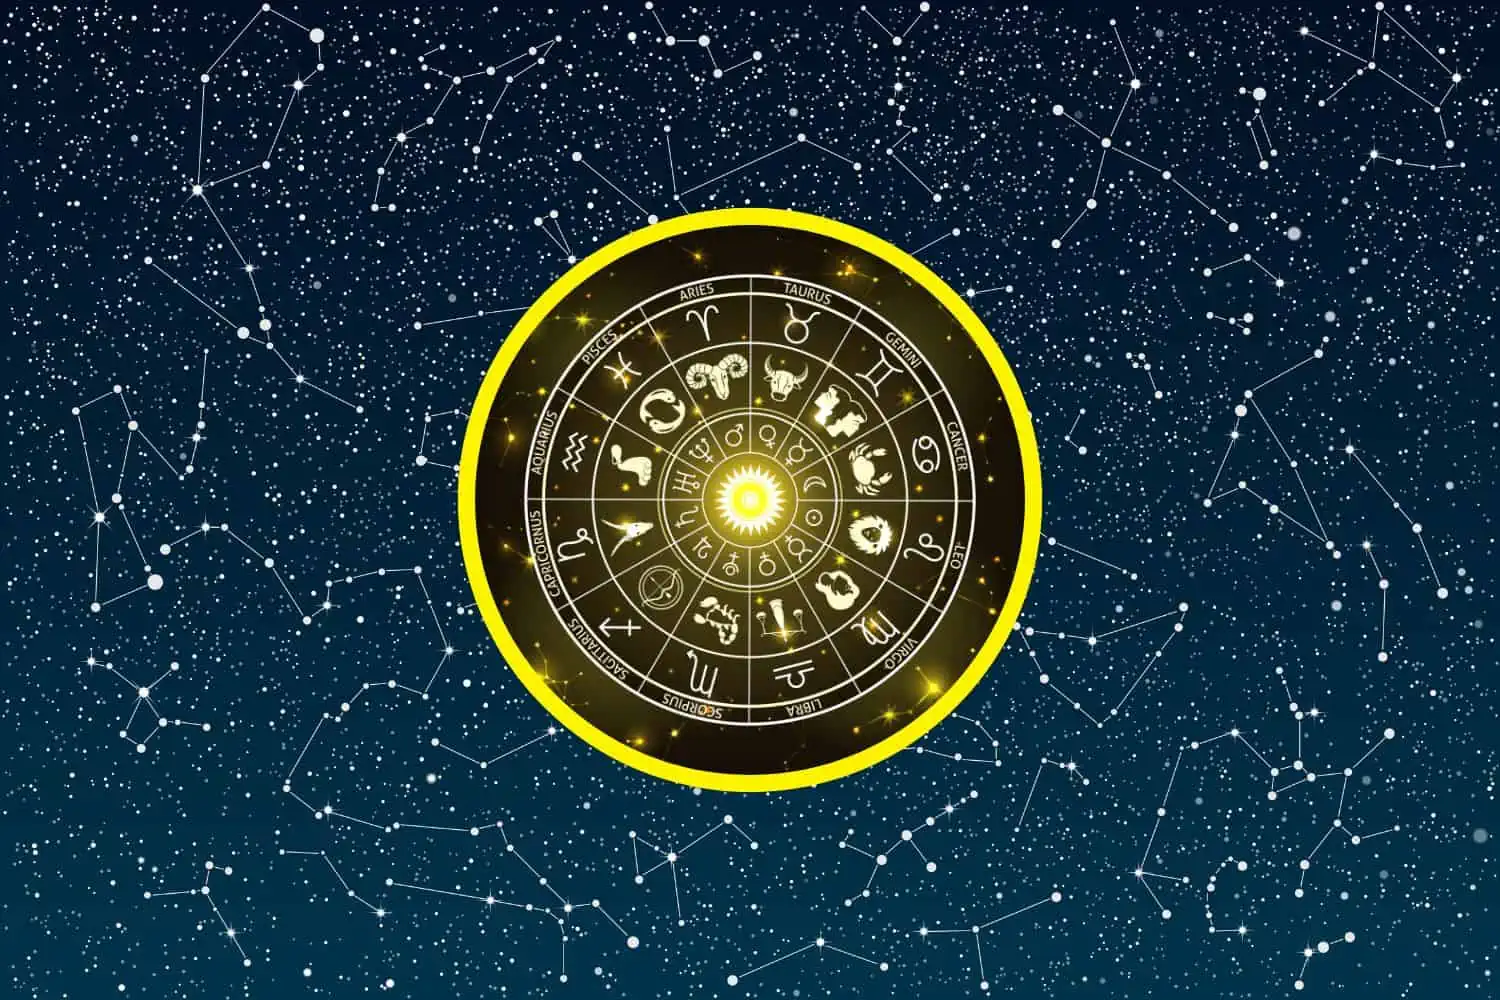 Today’s Free Horoscopes Tuesday 31 January 2023